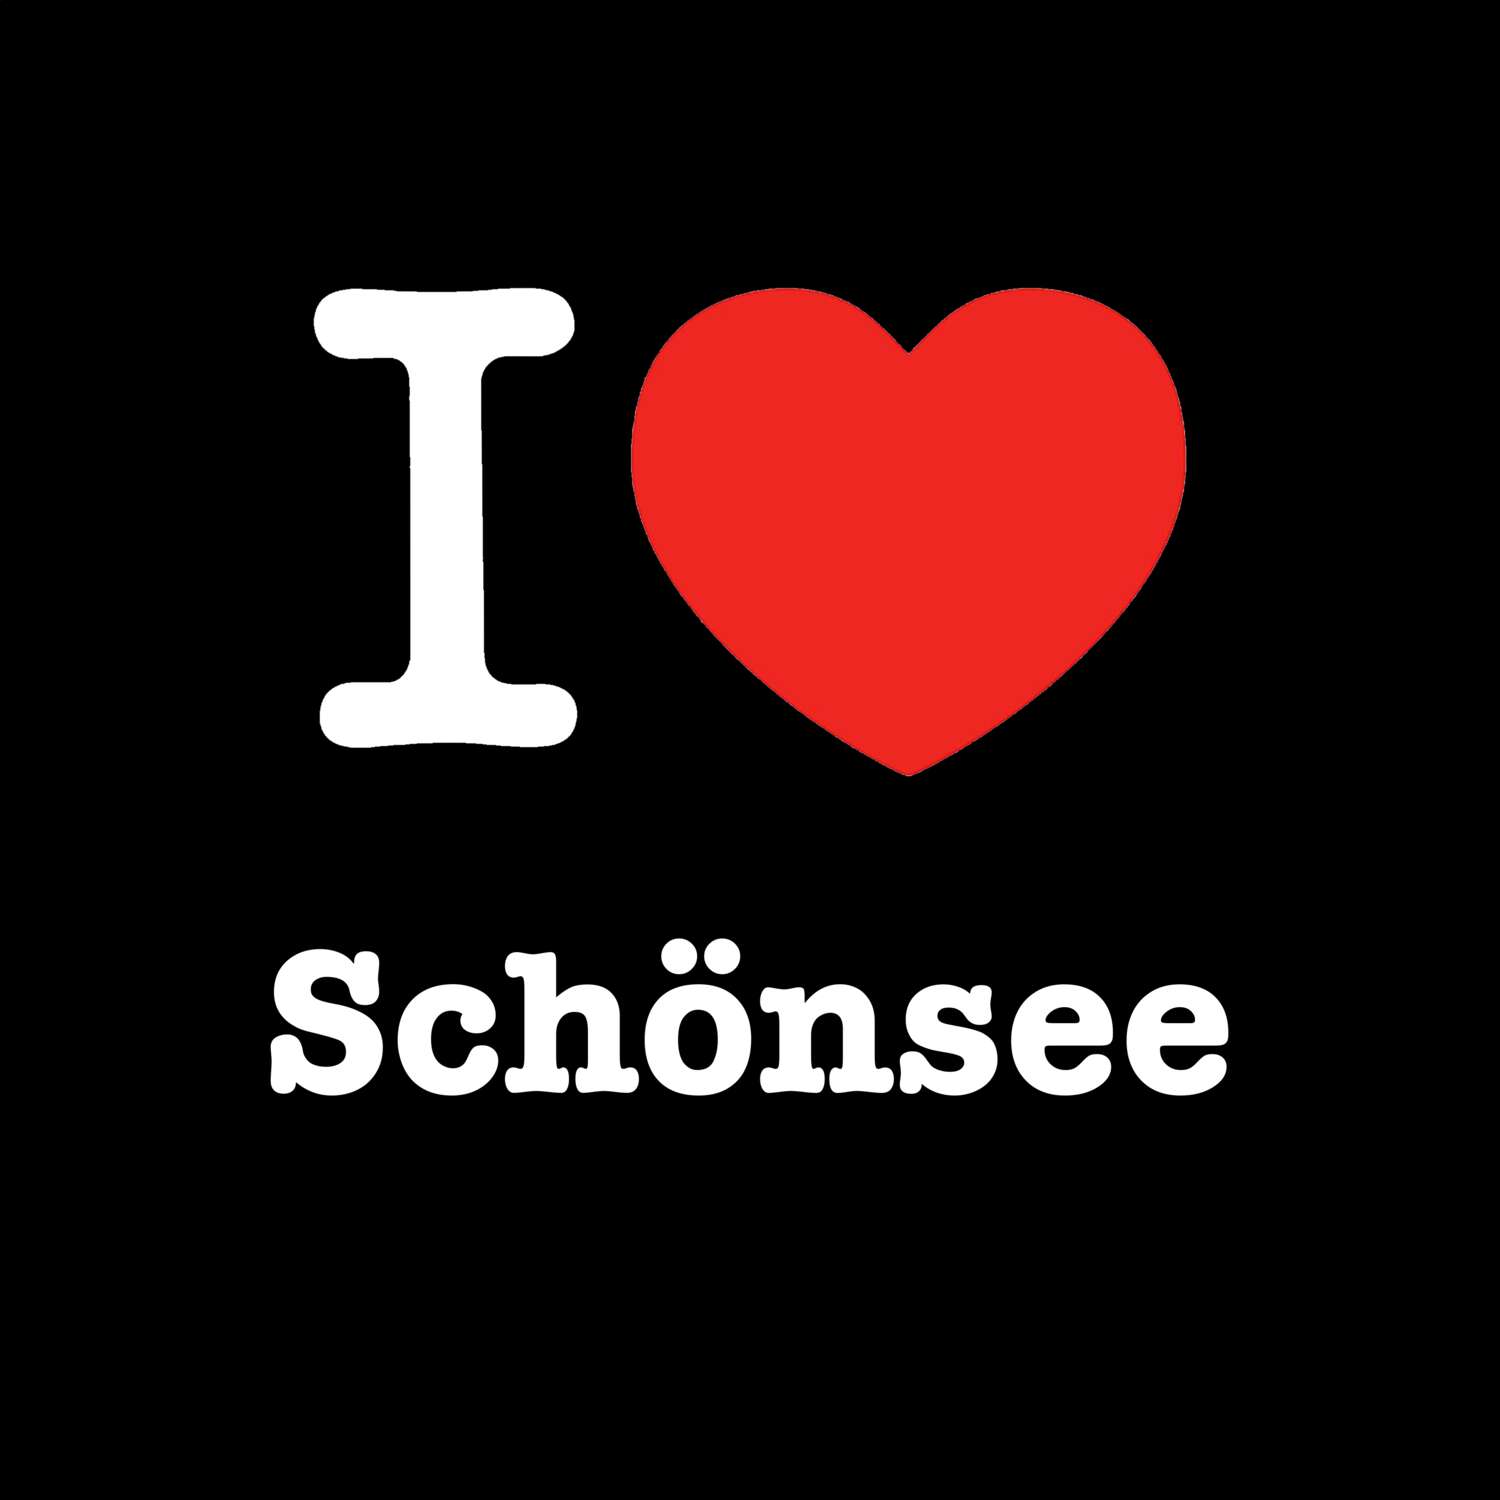 Schönsee T-Shirt »I love«